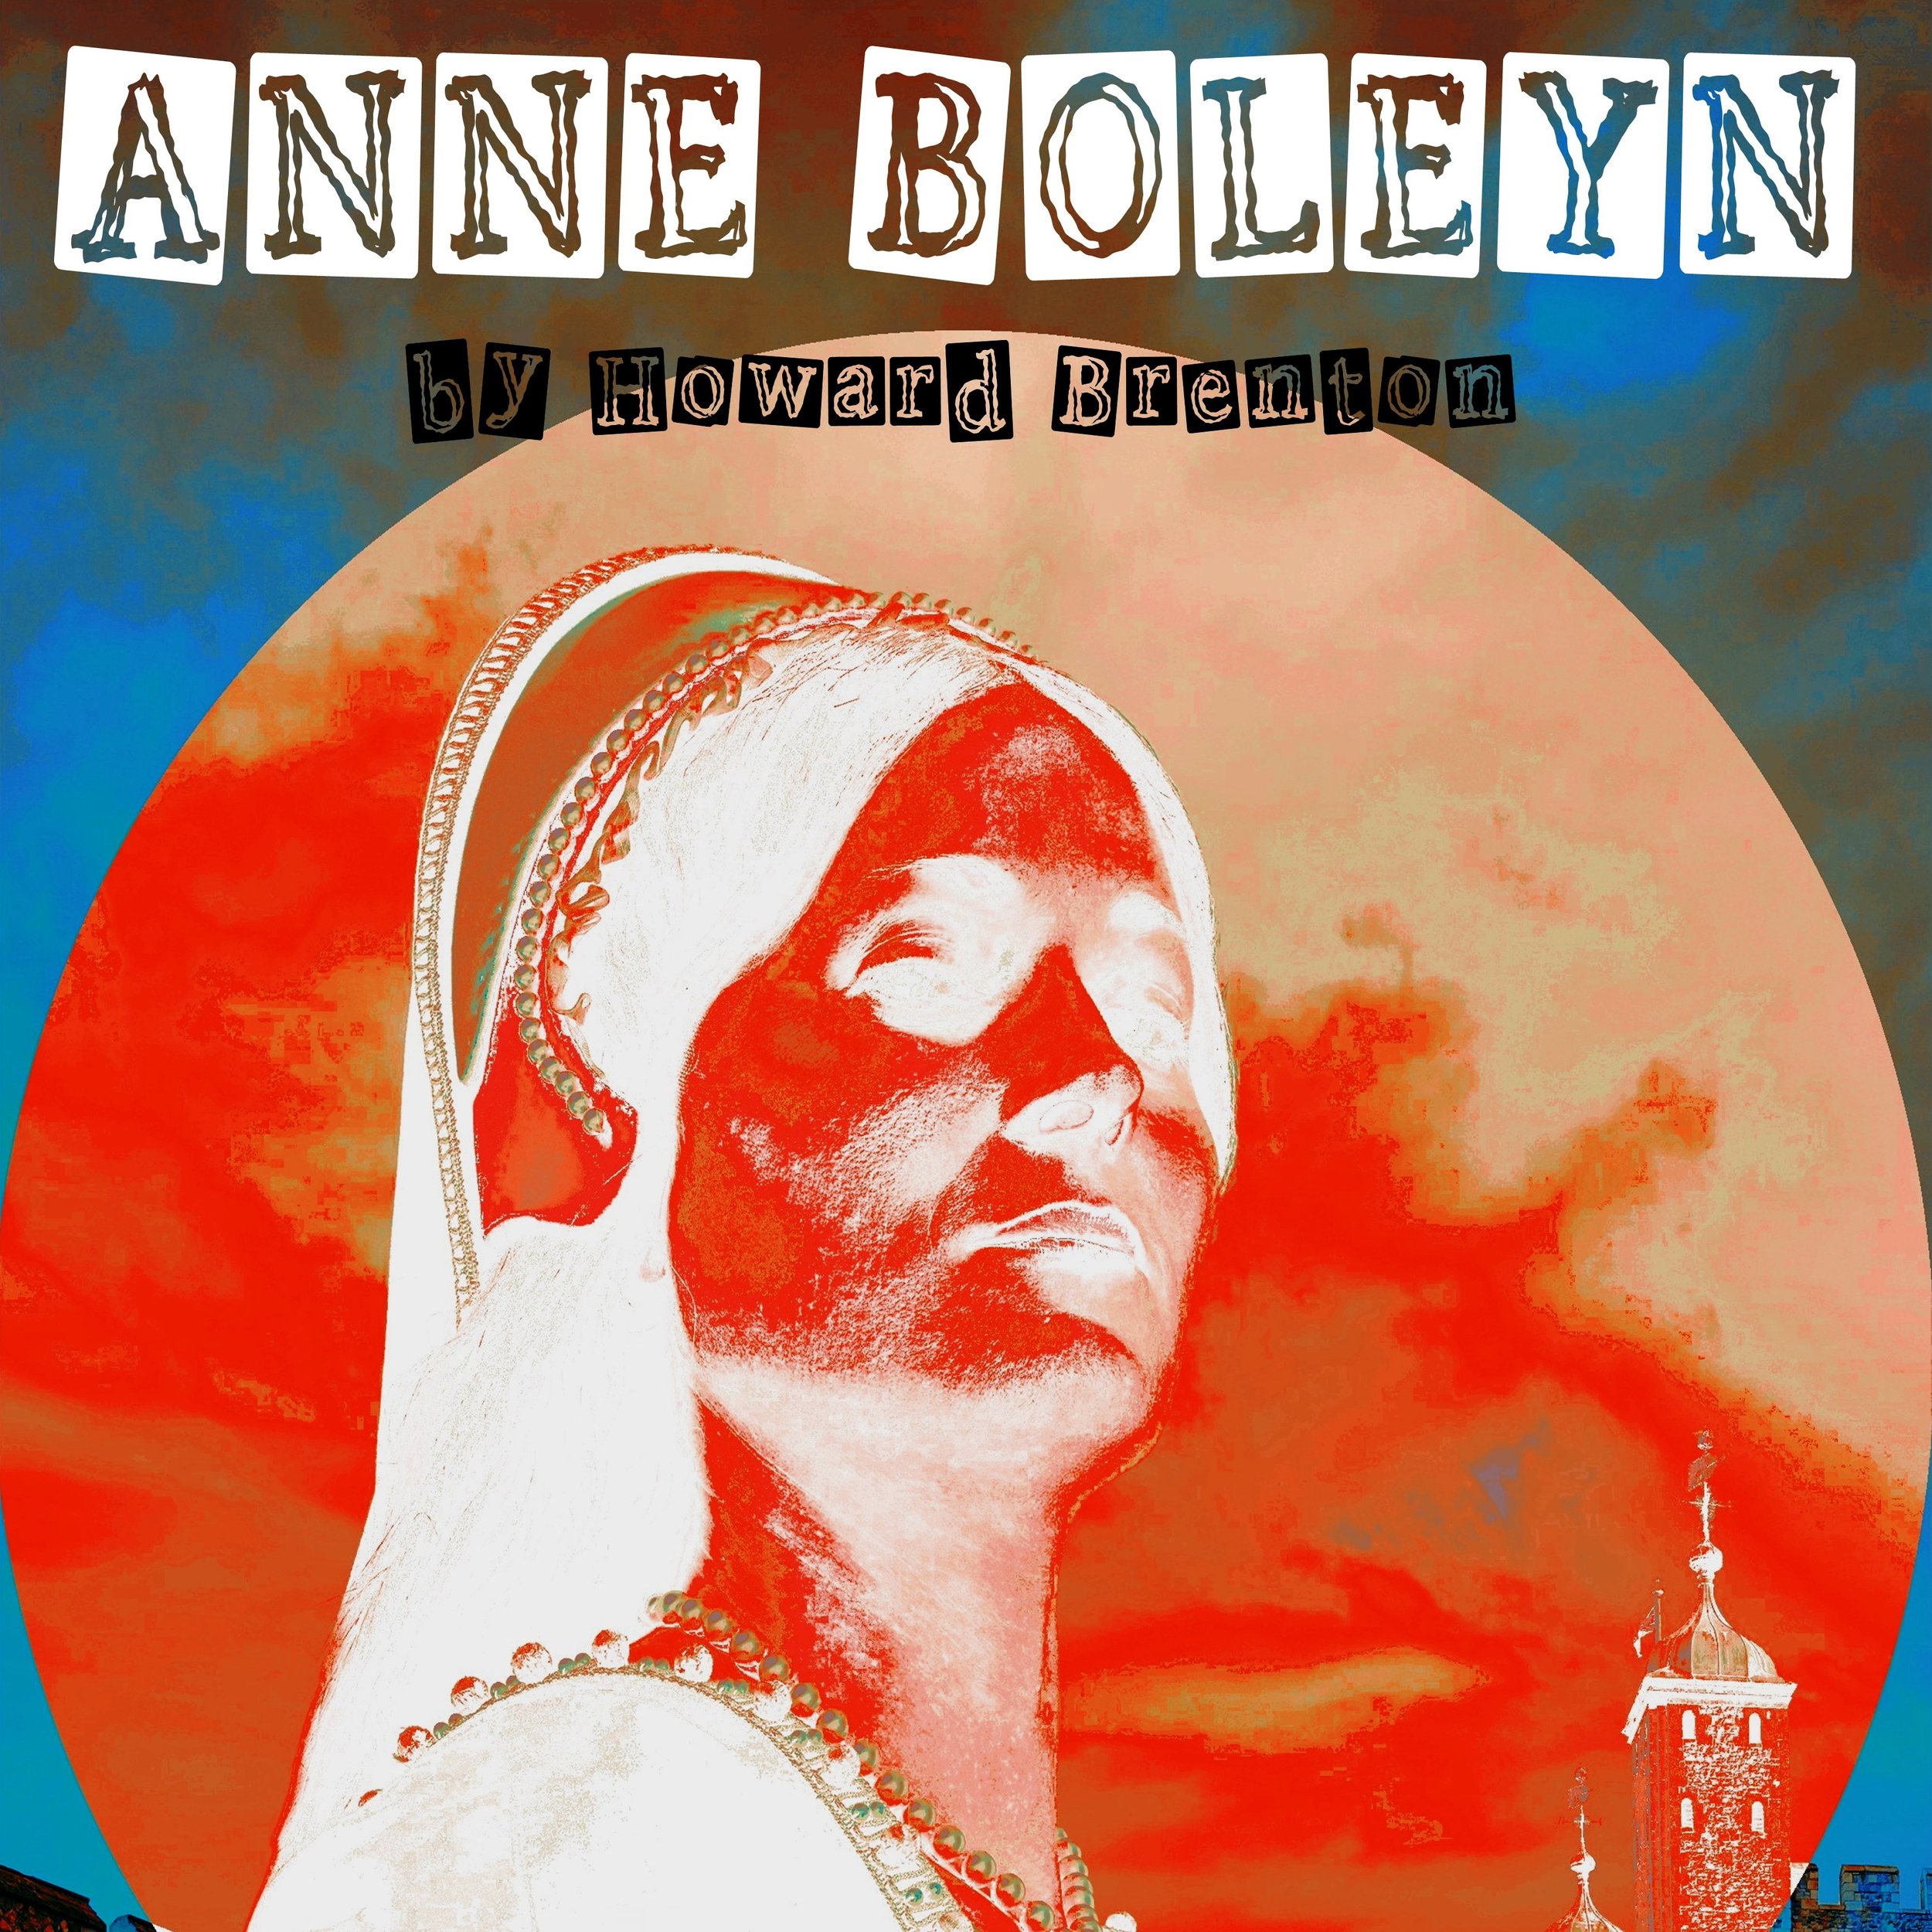 Anne Boleyn - Audition Date Sunday 20th February 2022, 12noon